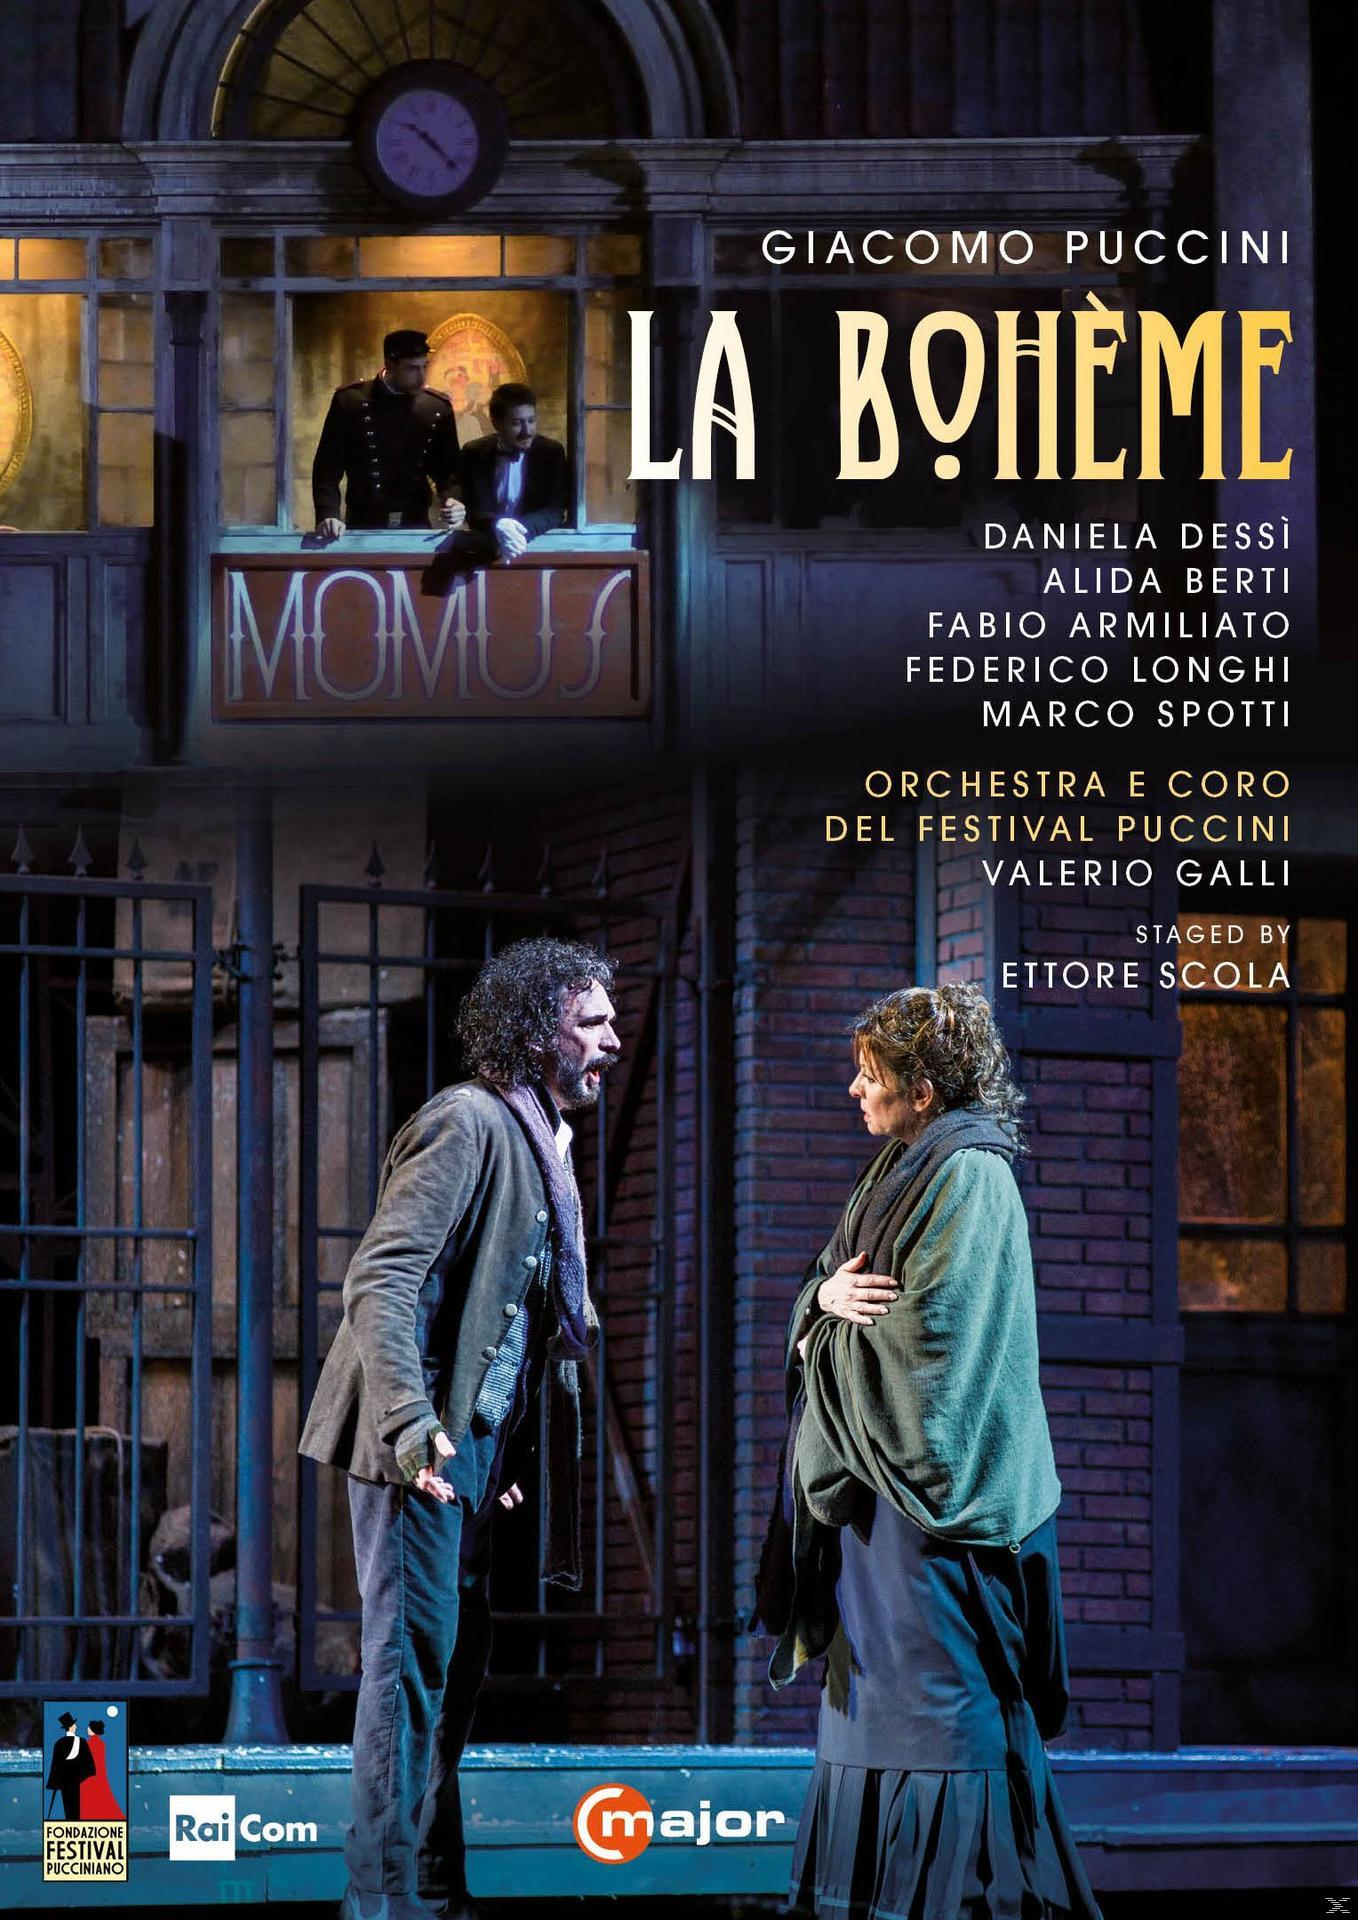 VARIOUS, Orchestra E Del Puccini Festival Coro - (DVD) - Boheme La